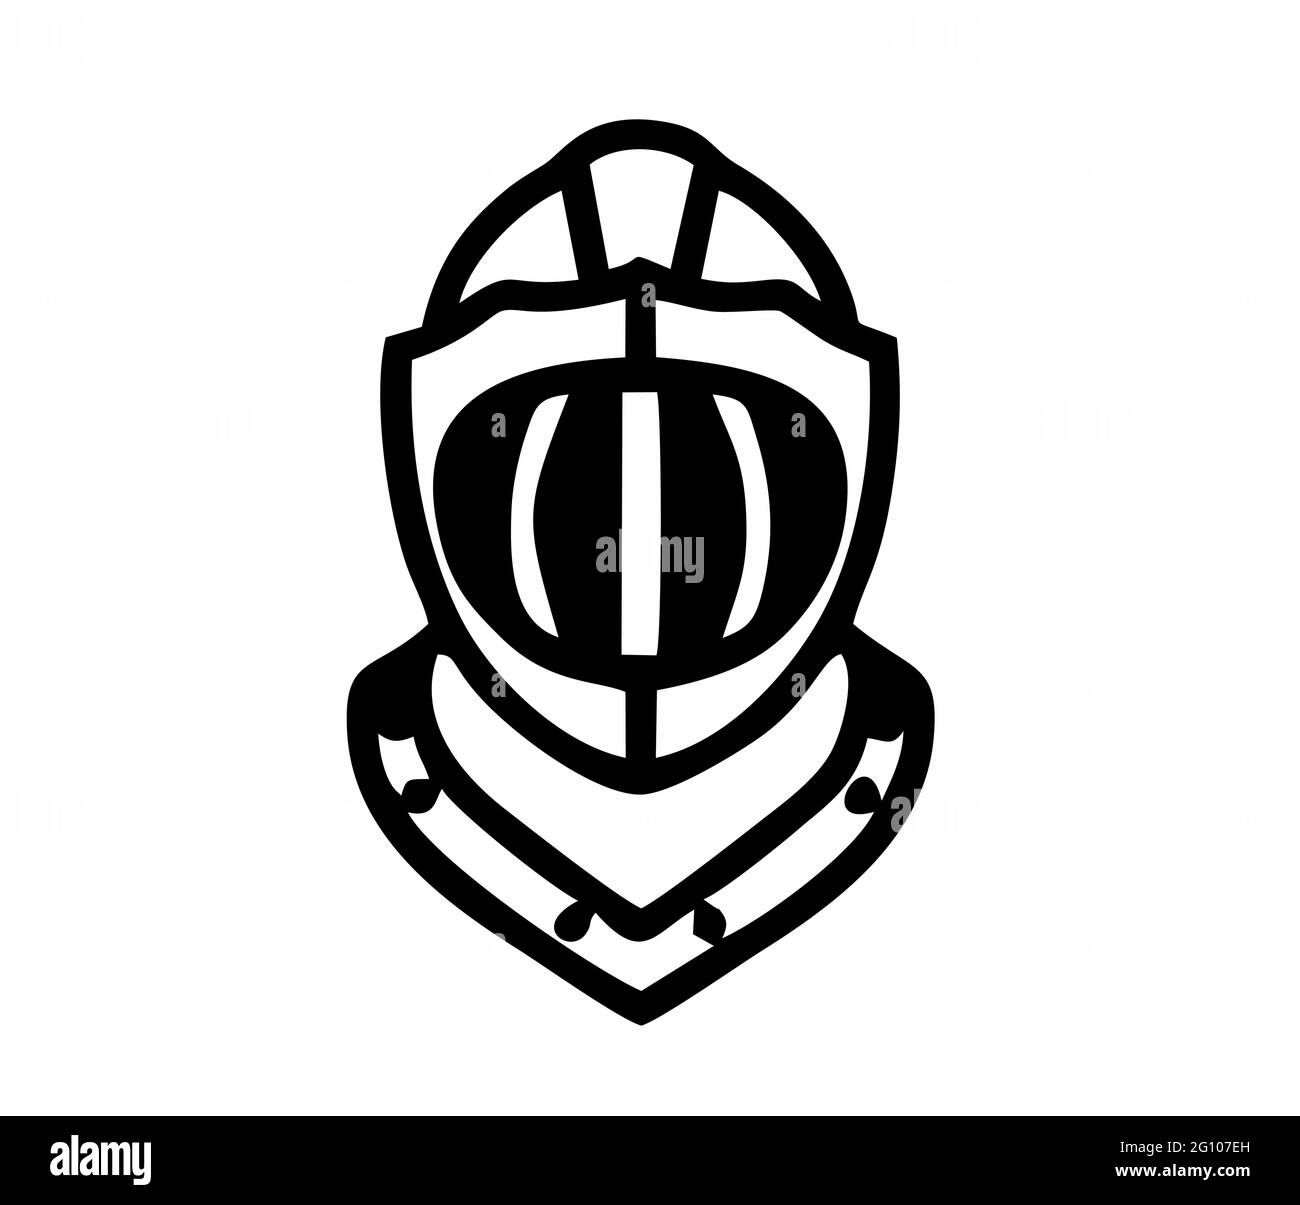 casque de chevalier médiéval d'armure de chevalier en noir et blanc isolé comme un vecteur pour les signes, le logo, les applications et les sites web Illustration de Vecteur